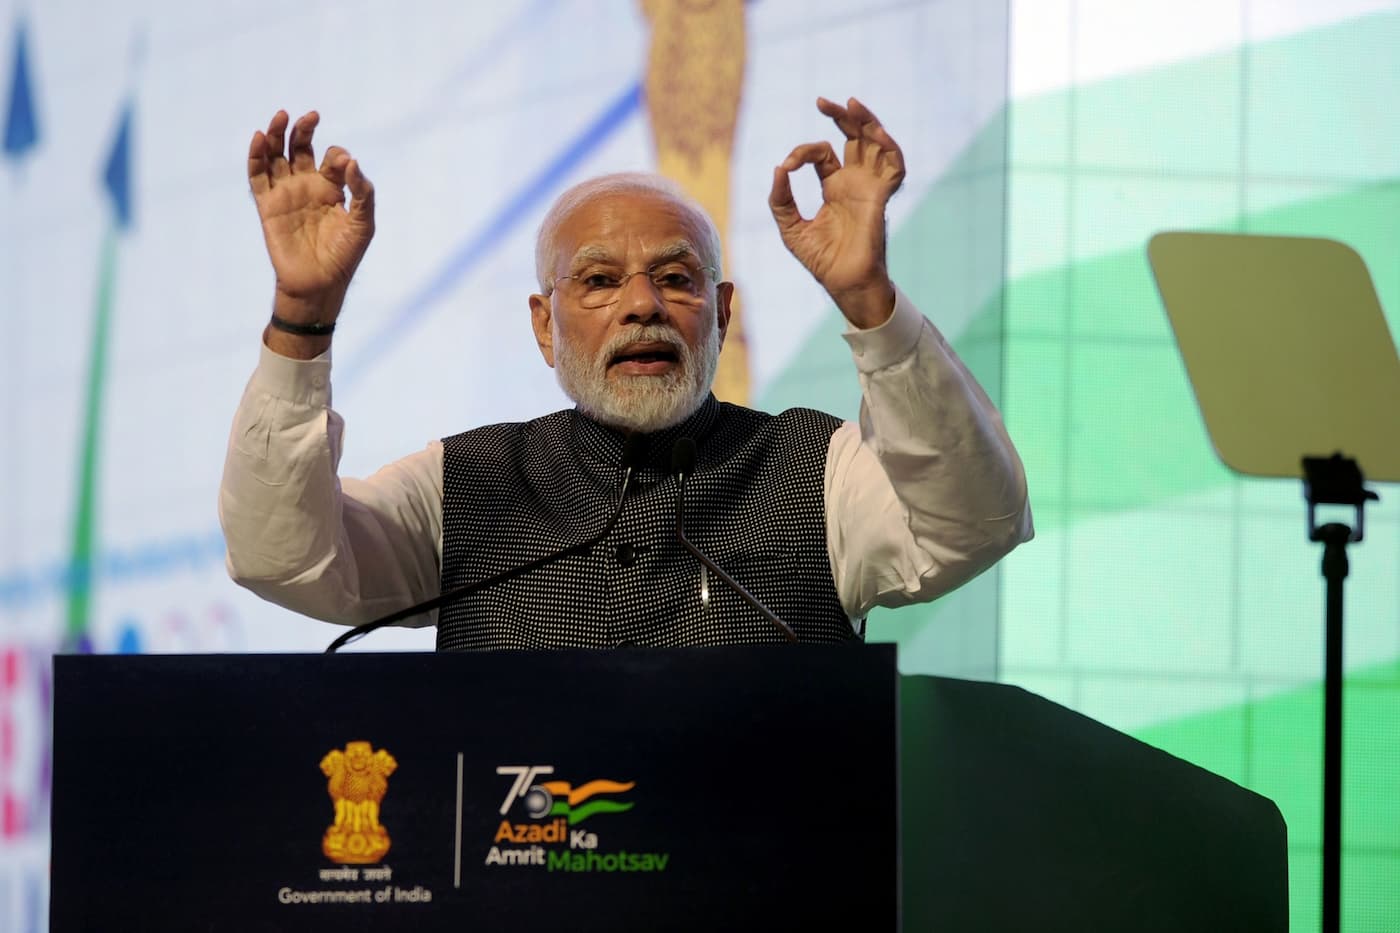 インド、300億ドルを投じてクリーン電力用の送電網を整備する計画を発表